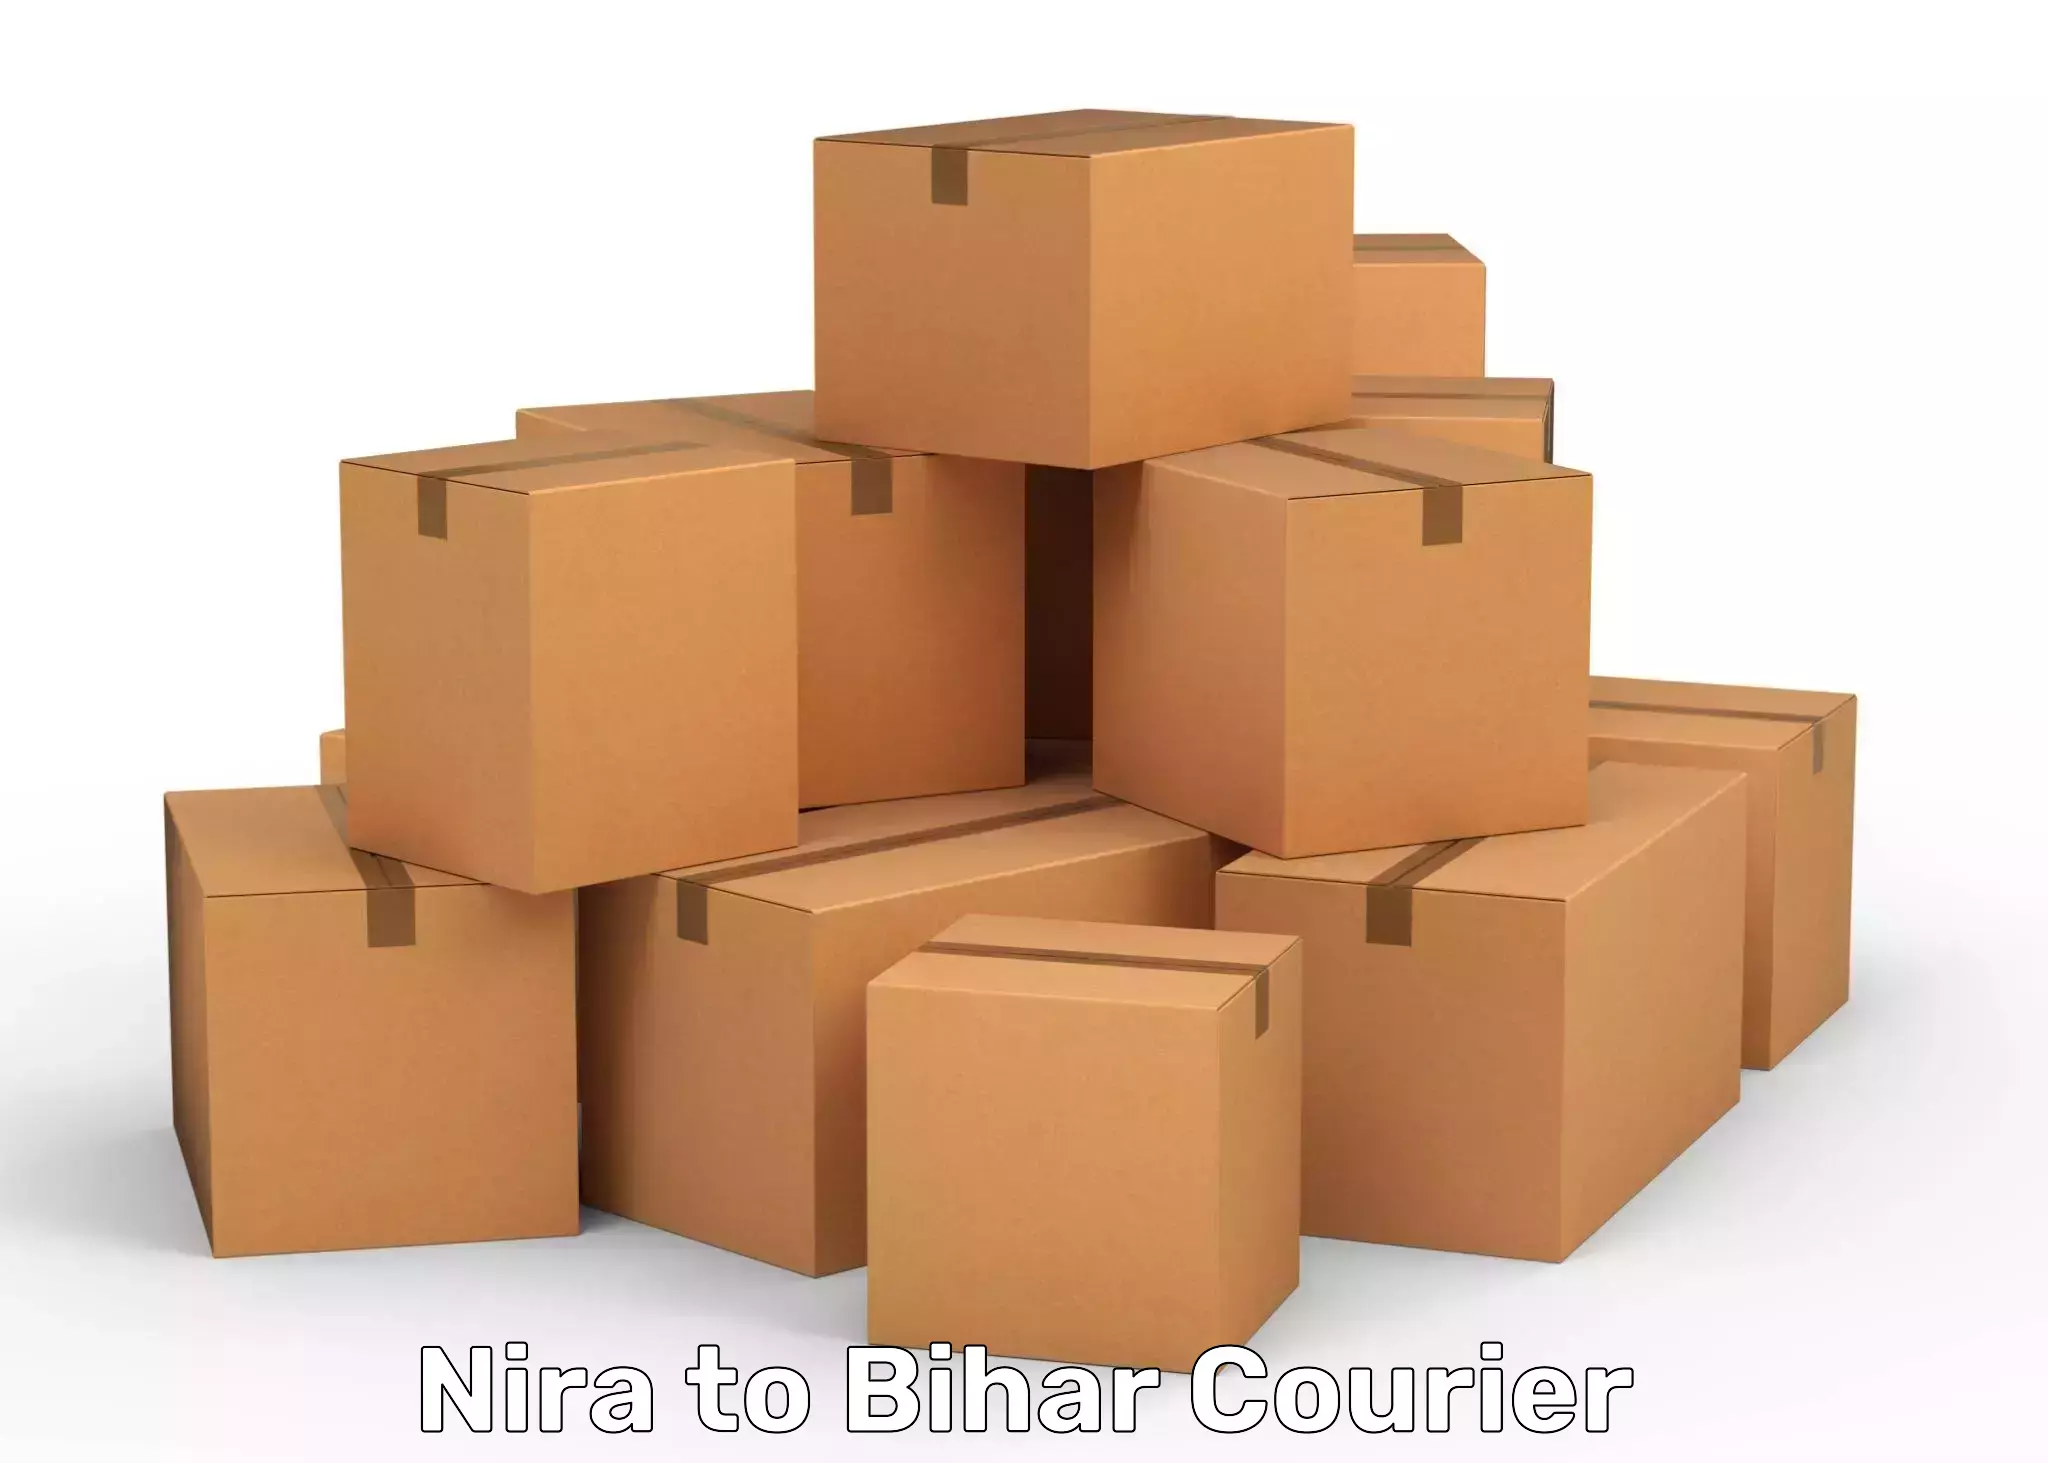 Tech-enabled shipping in Nira to Hajipur